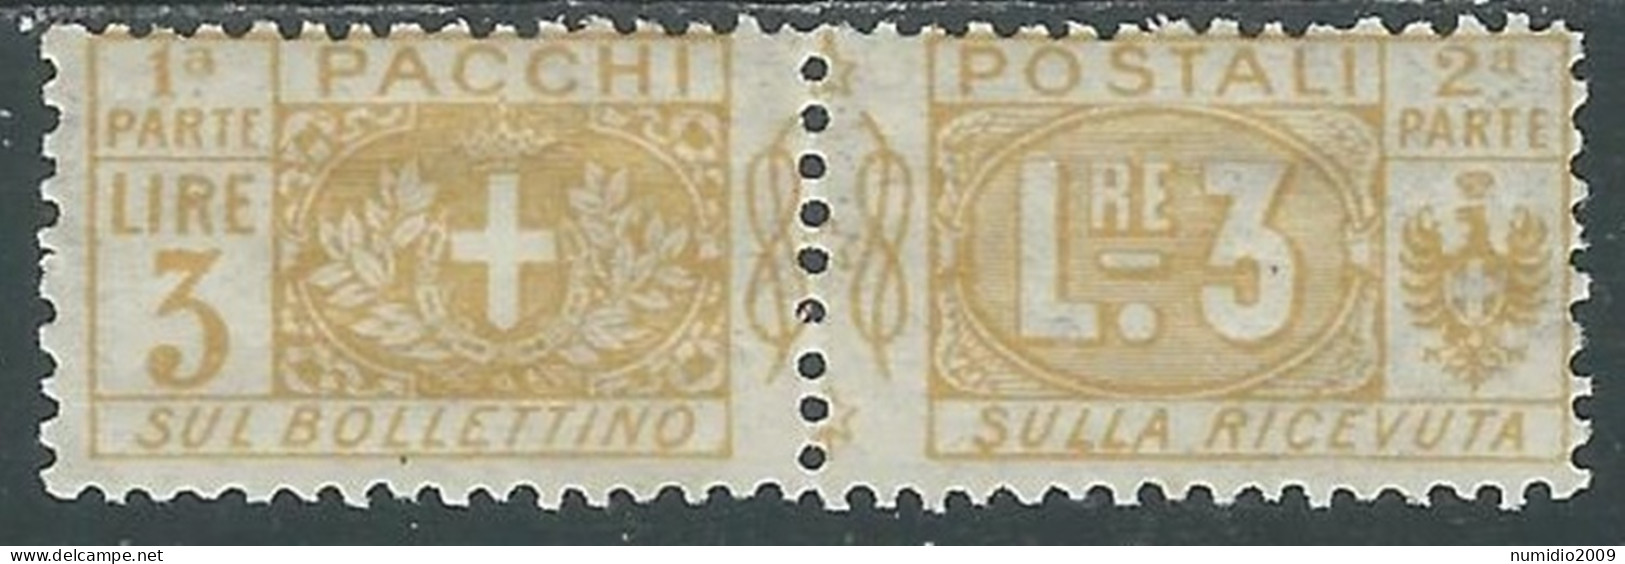 1914-22 REGNO PACCHI POSTALI 3 LIRE MH * - P31-3 - Postal Parcels